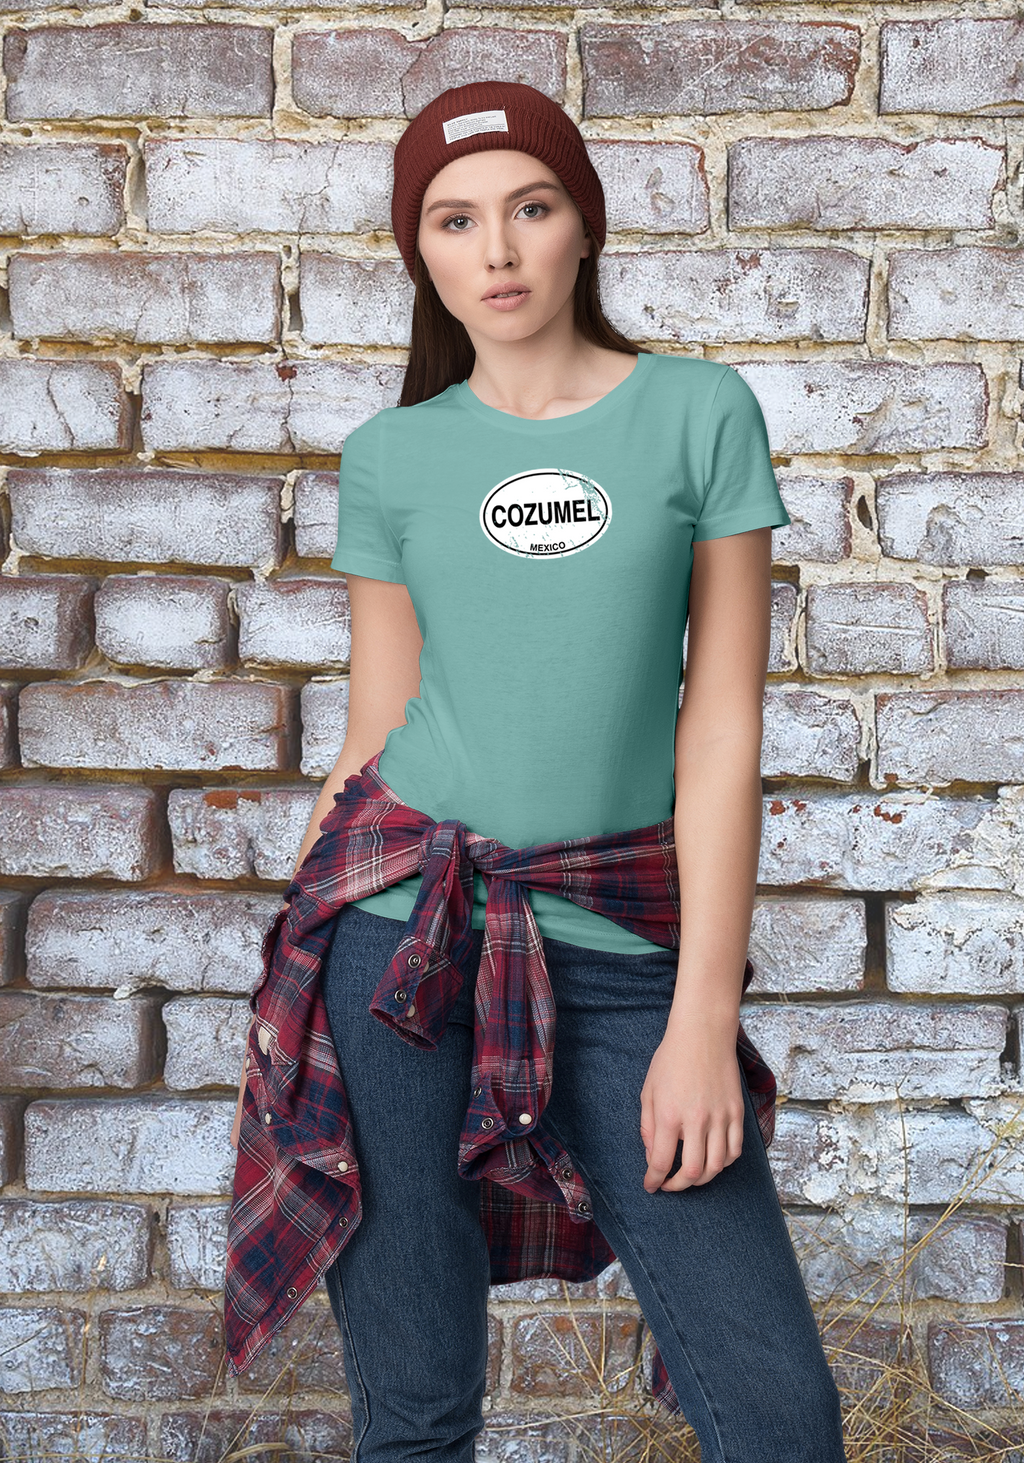 Cozumel Women's Classic T-Shirt Souvenirs - My Destination Location